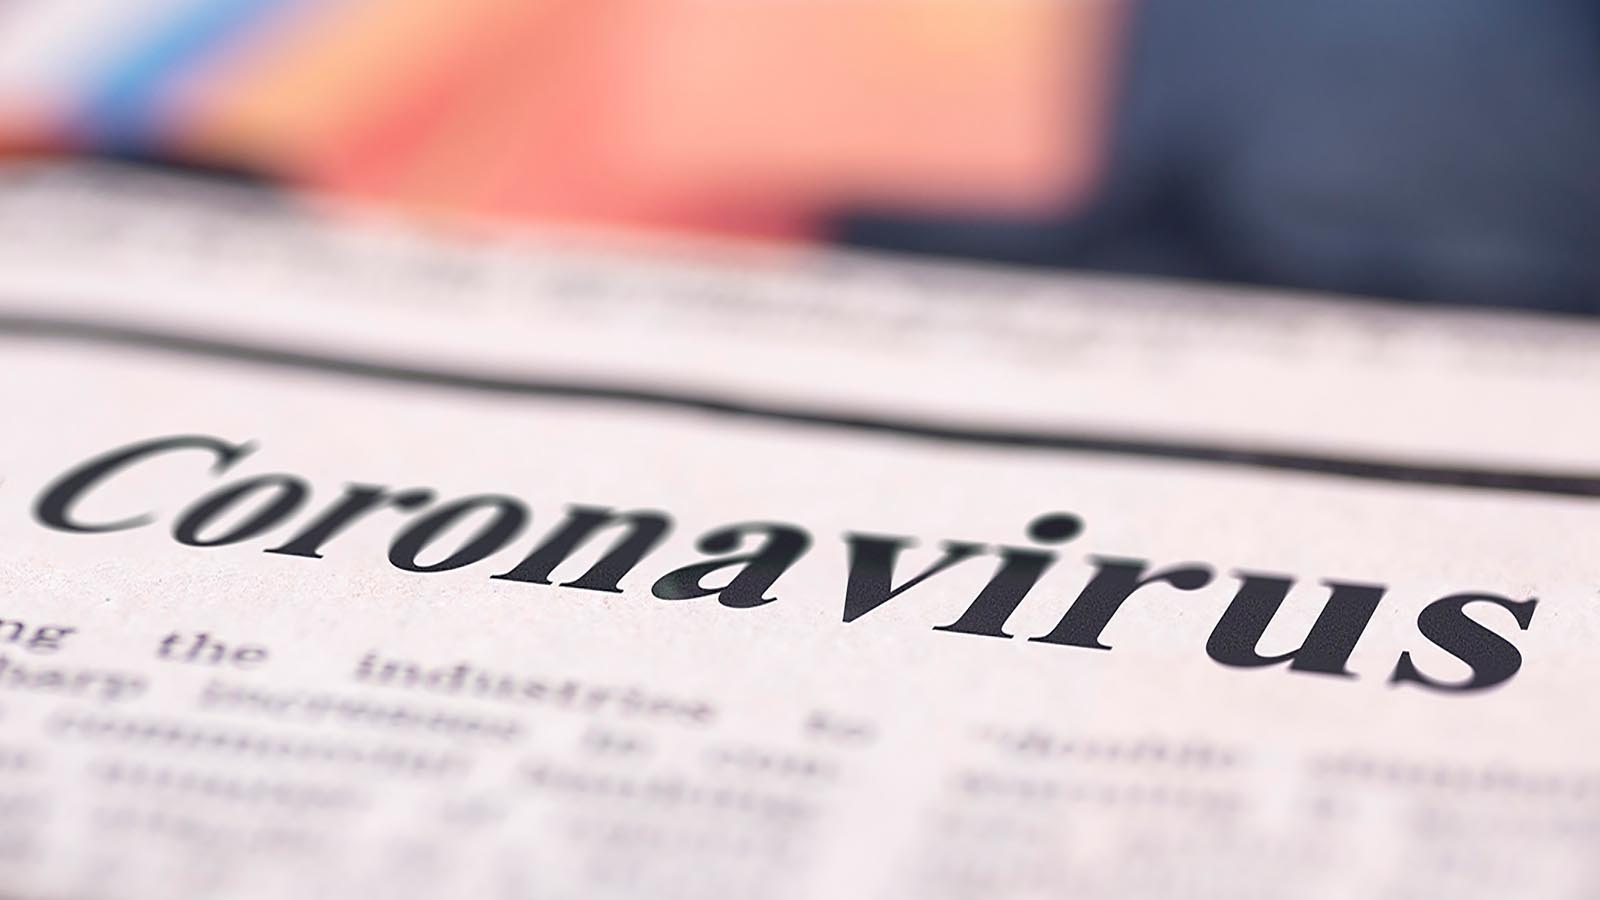 Newspaper headline - reads "Coronavirus"